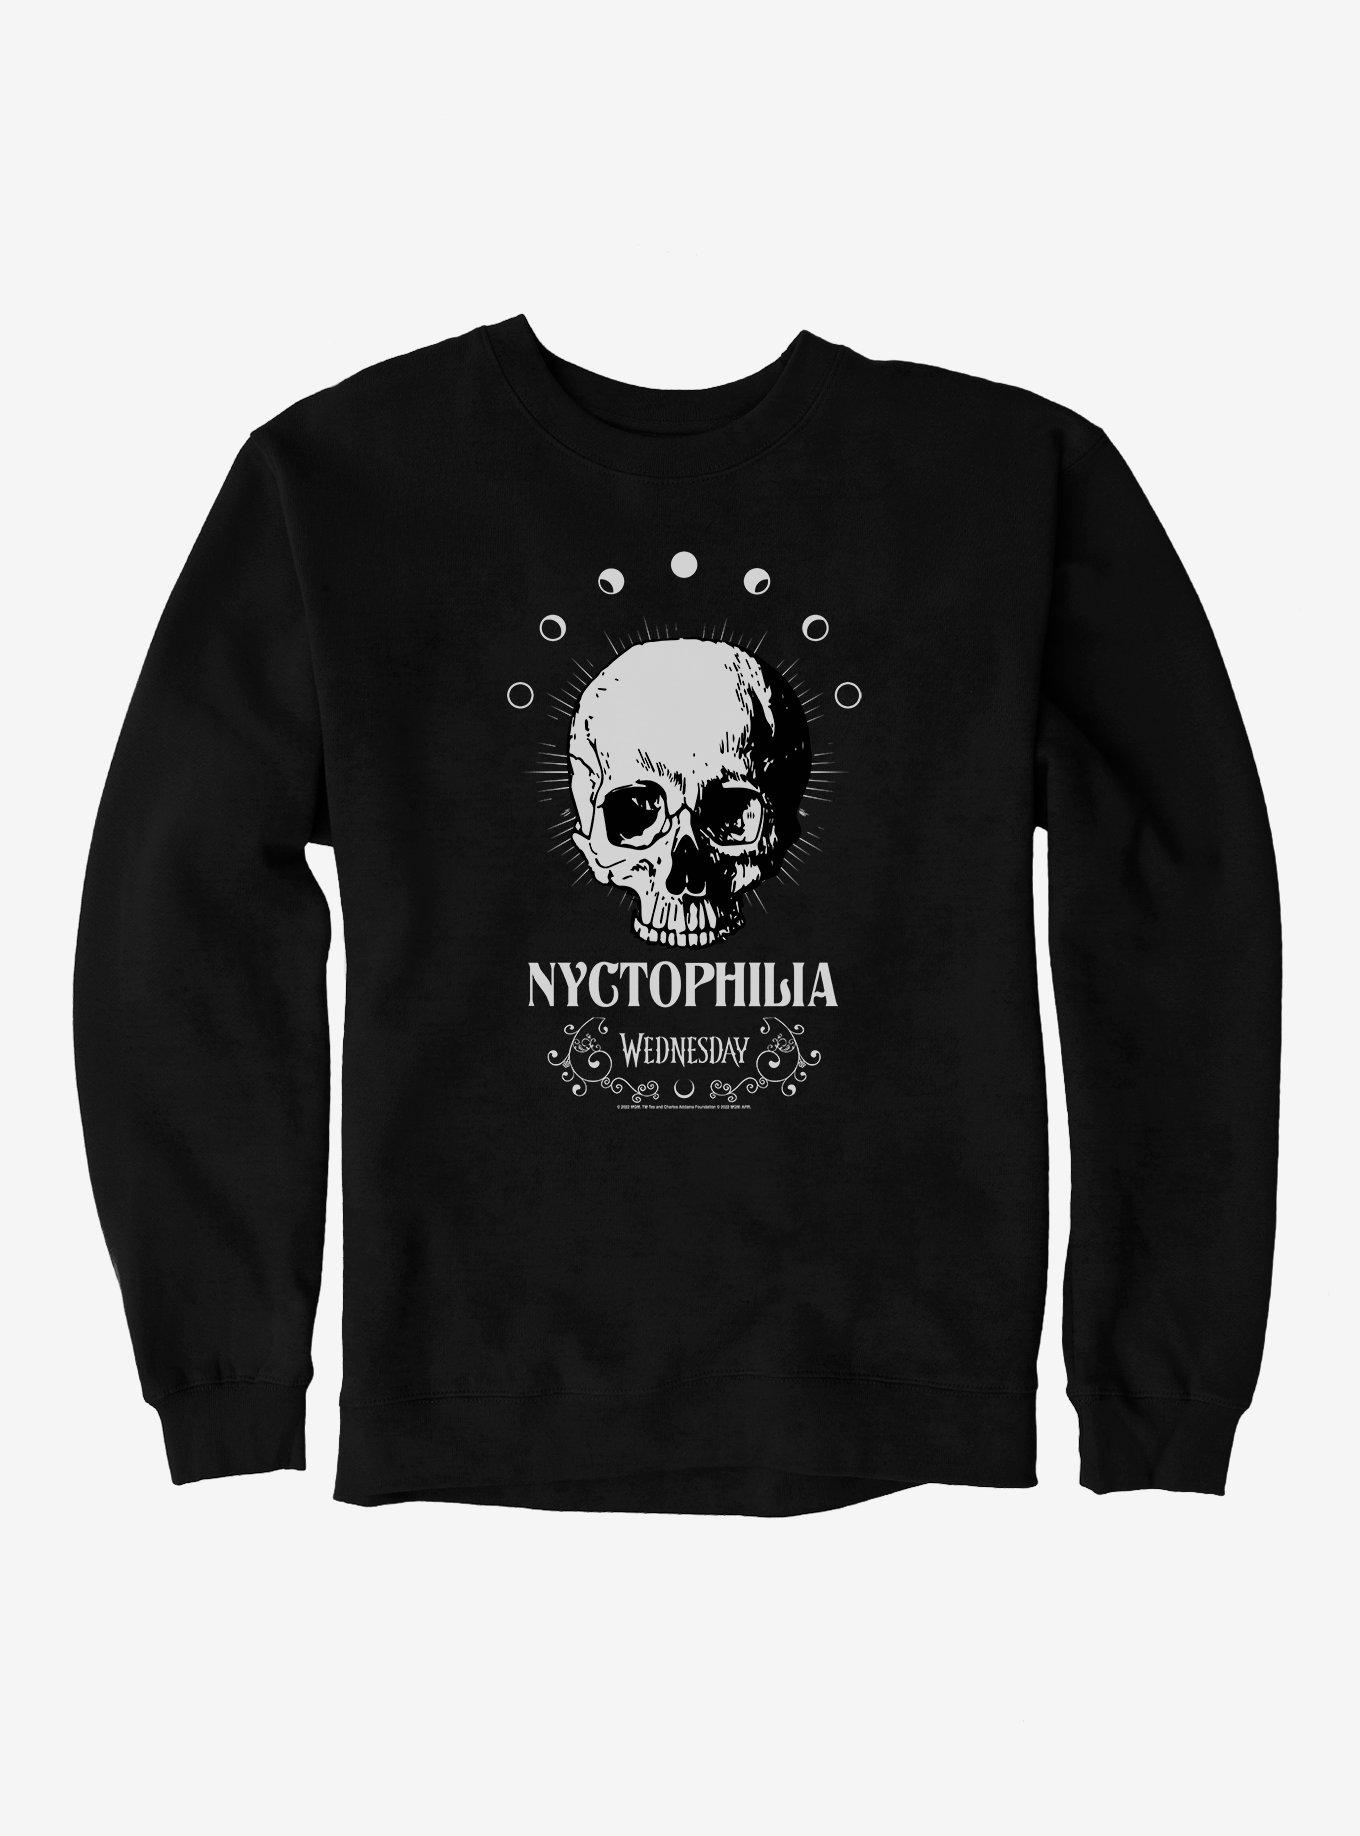 Wednesday Nyctophilia Sweatshirt, BLACK, hi-res